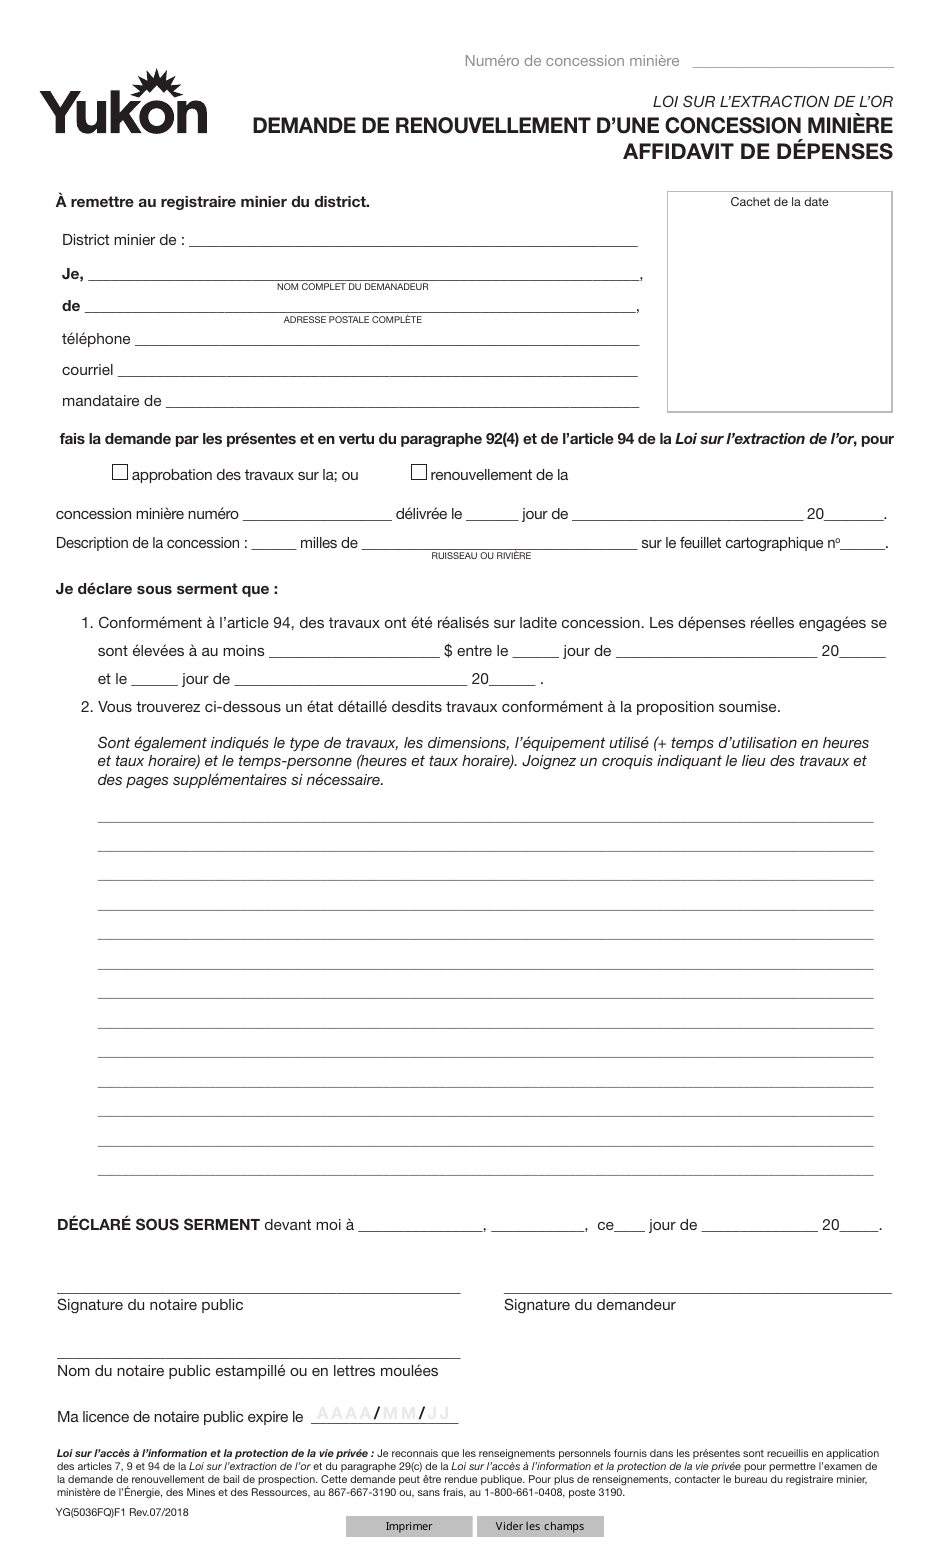 Forme YG5036 Demande De Renouvellement Dune Concession Miniere Affidavit De Depenses - Yukon, Canada (French), Page 1